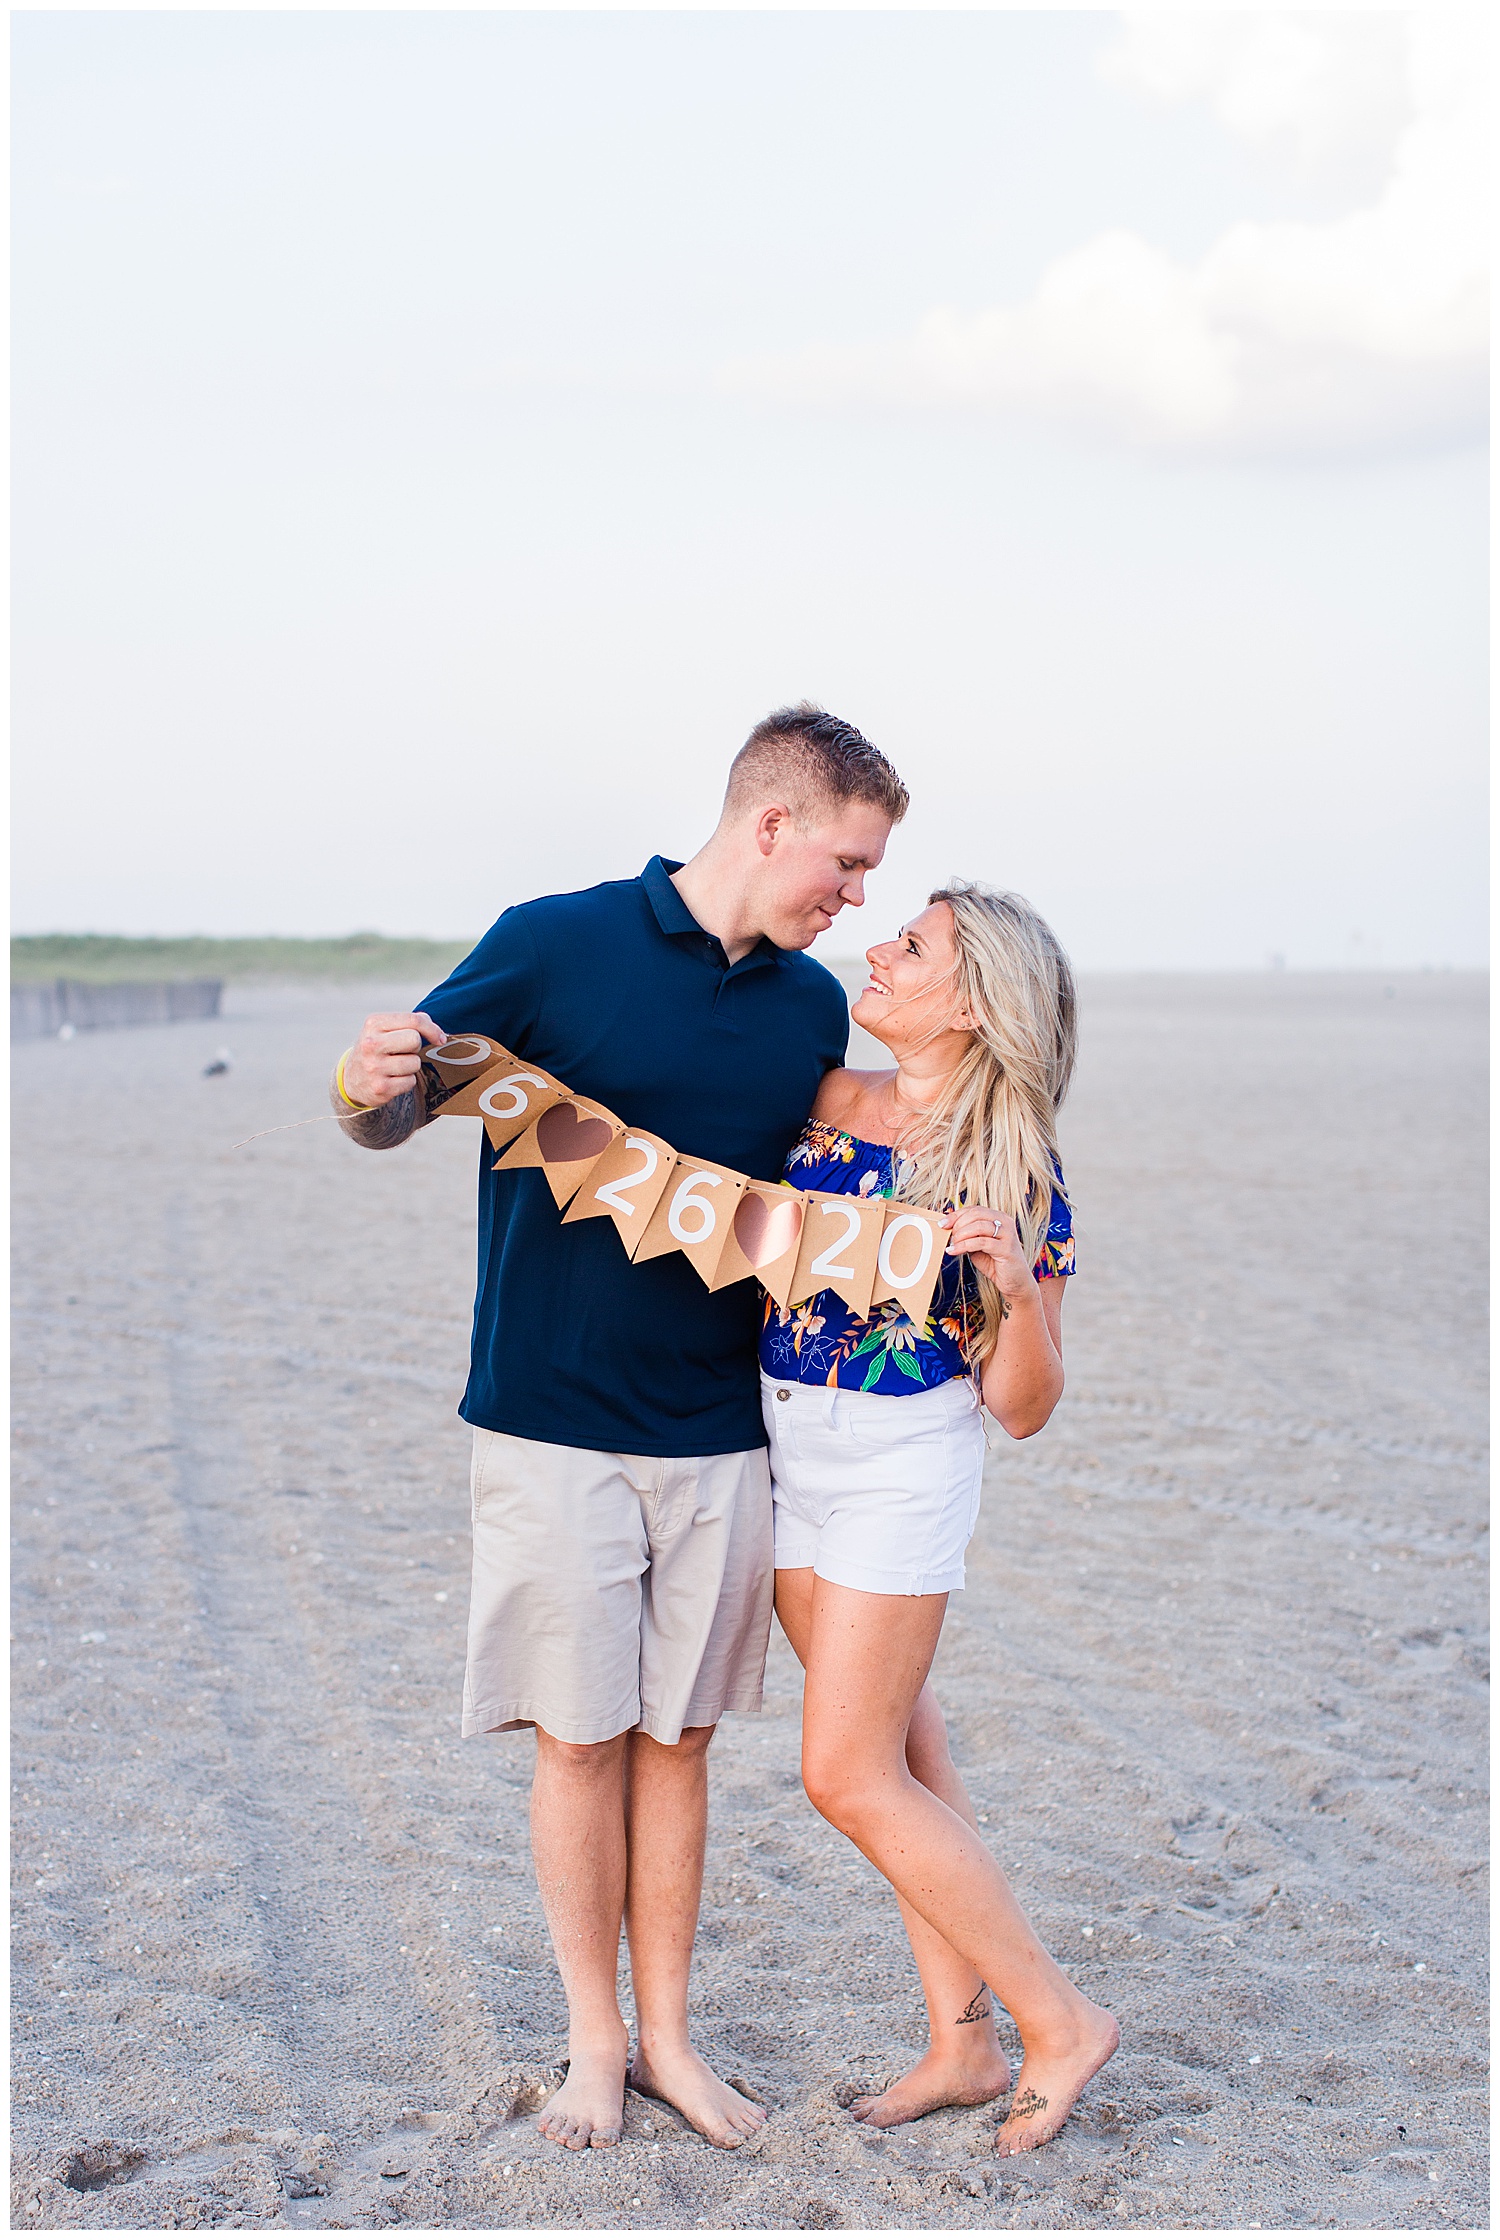 Couple holds date flag on beach